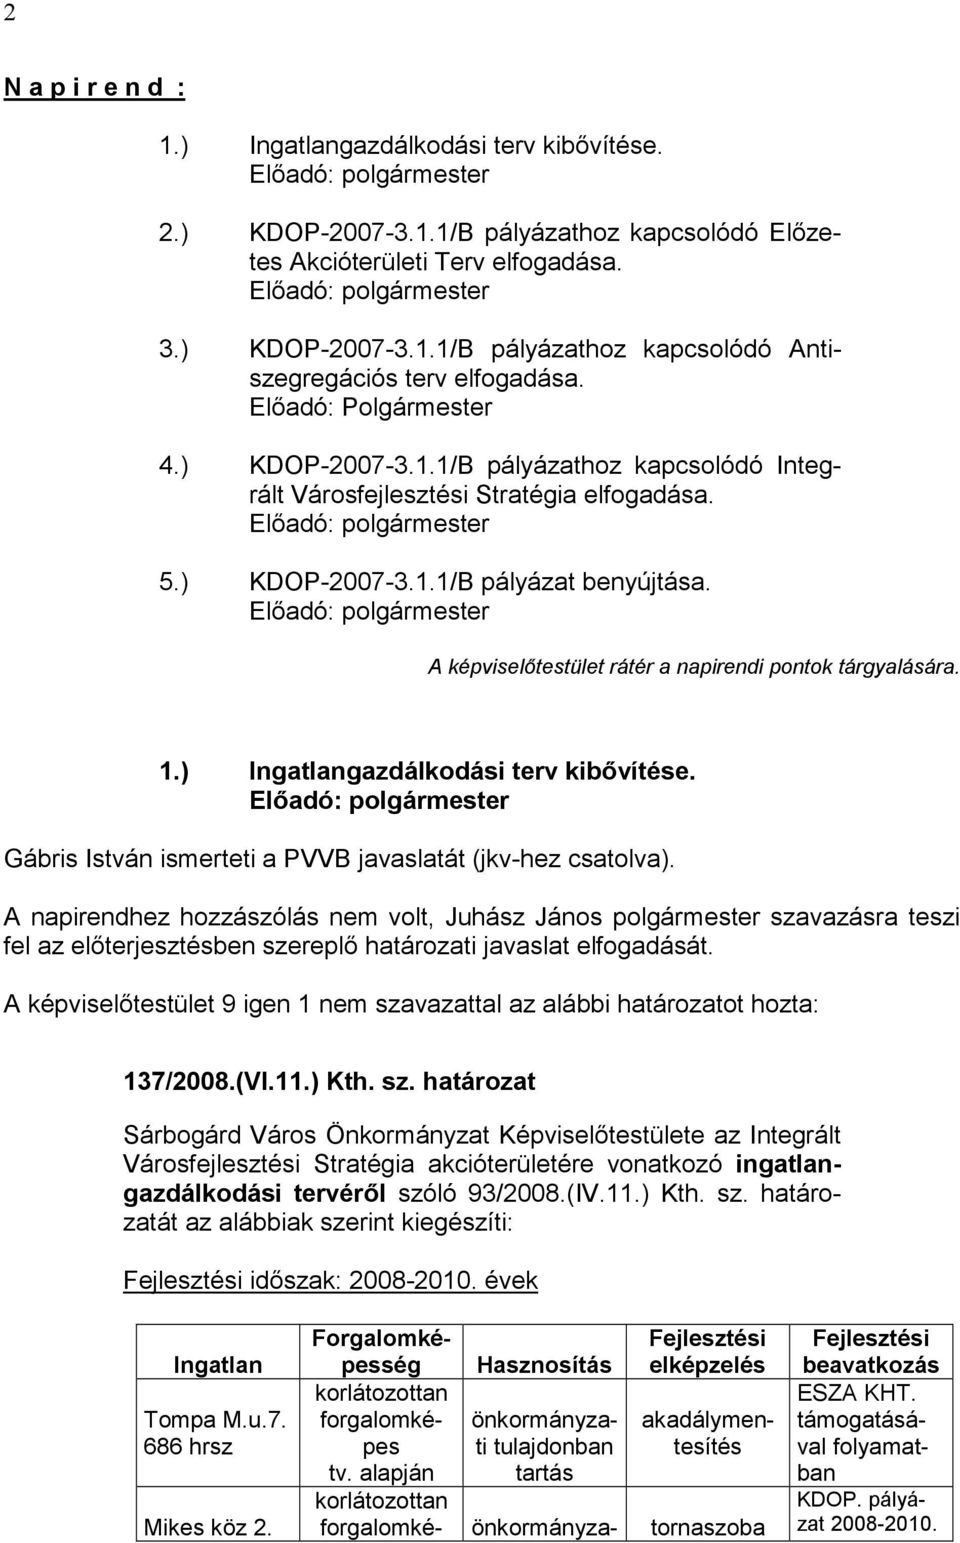 A képviselőtestület rátér a napirendi pontok tárgyalására. 1.) Ingatlangazdálkodási terv kibővítése. Gábris István ismerteti a PVVB javaslatát (jkv-hez csatolva).